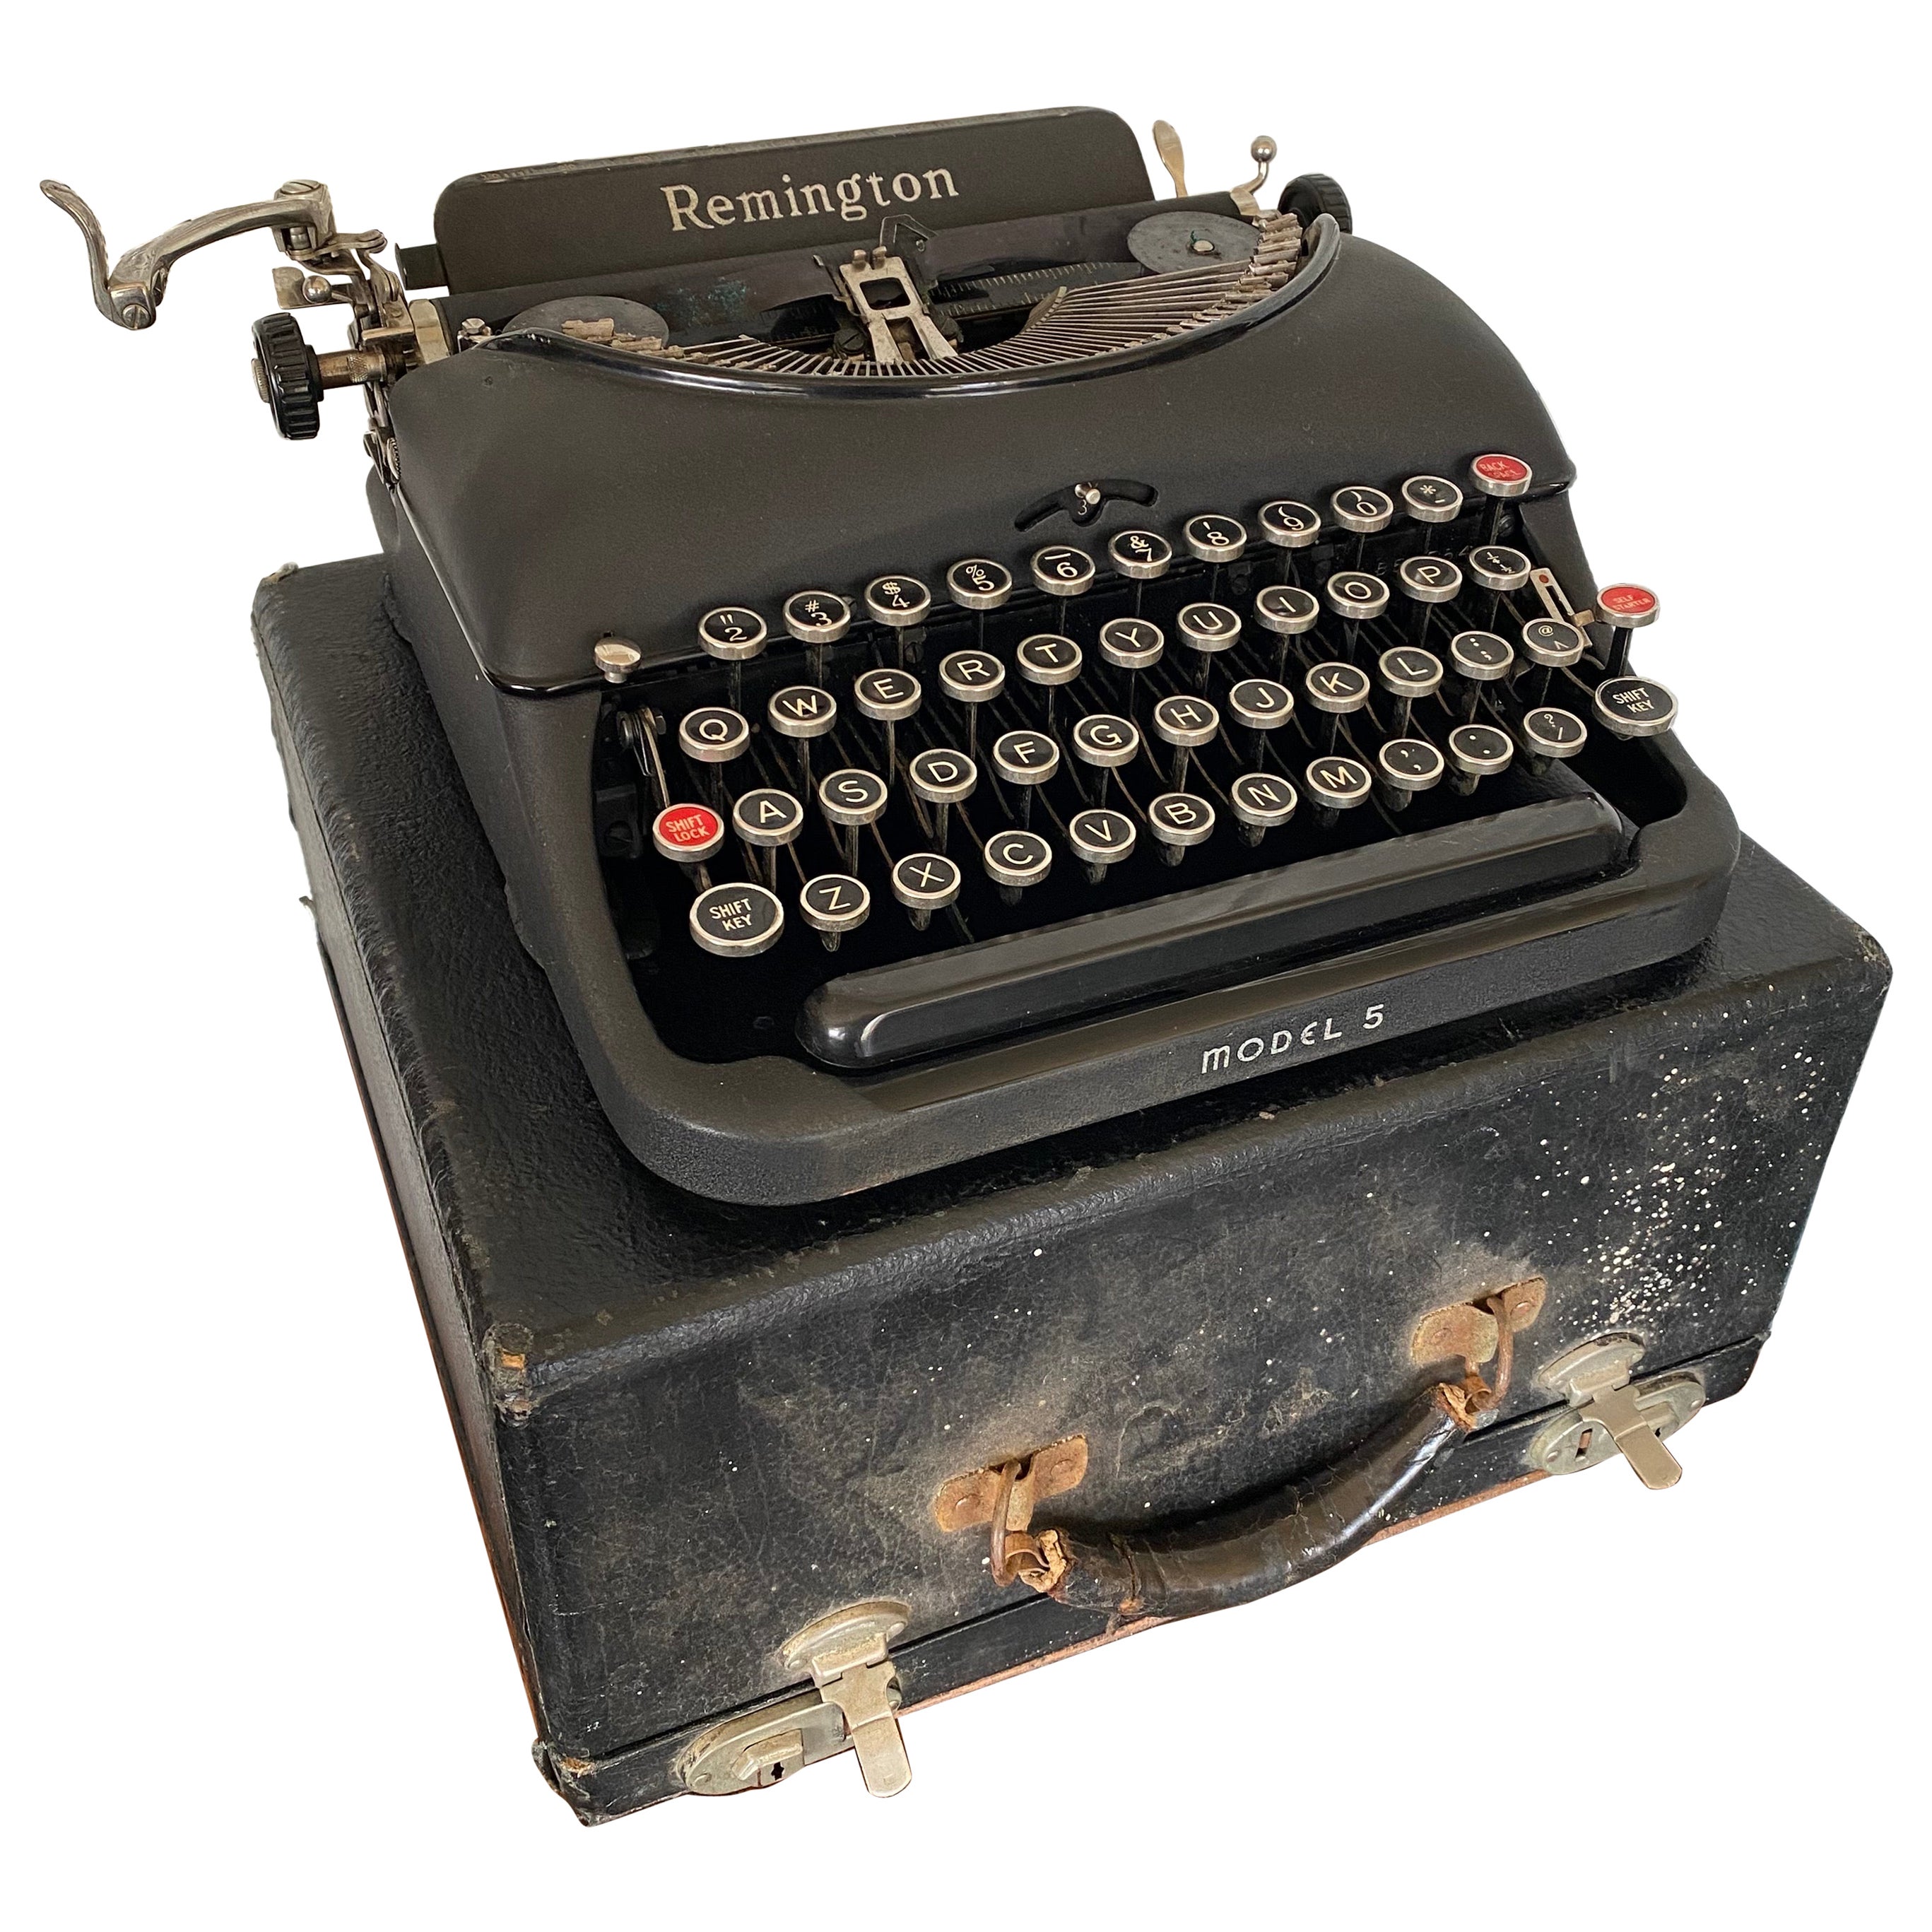 1940s Remington Model 5 Portable Black Typewriter with Case (Machine à écrire portable noire avec étui) 